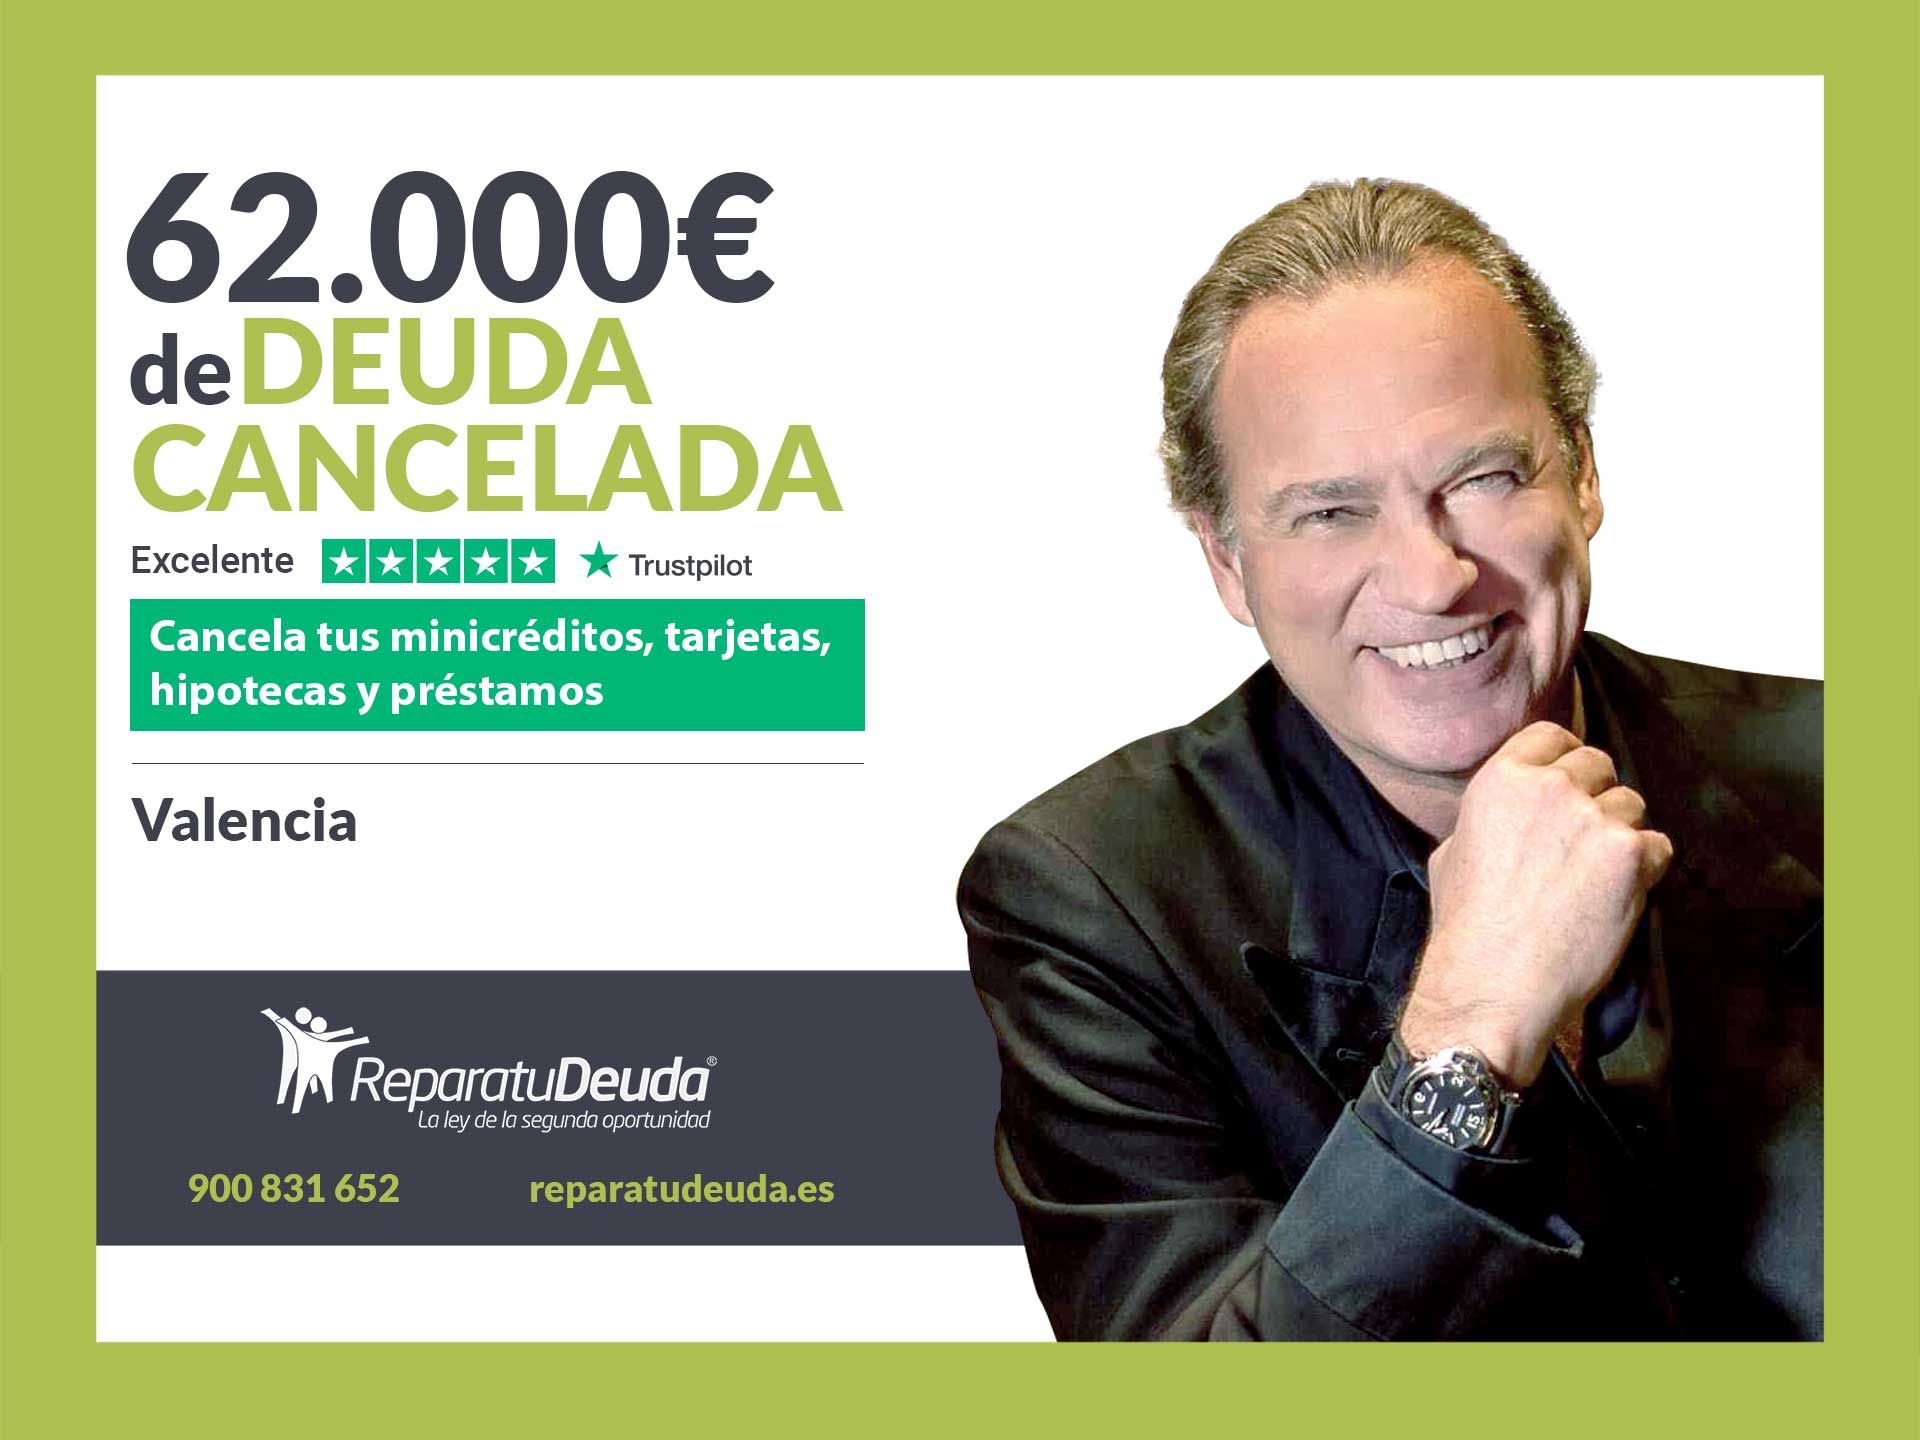 Repara tu Deuda Abogados cancela 62.000? en Valencia con la Ley de Segunda Oportunidad